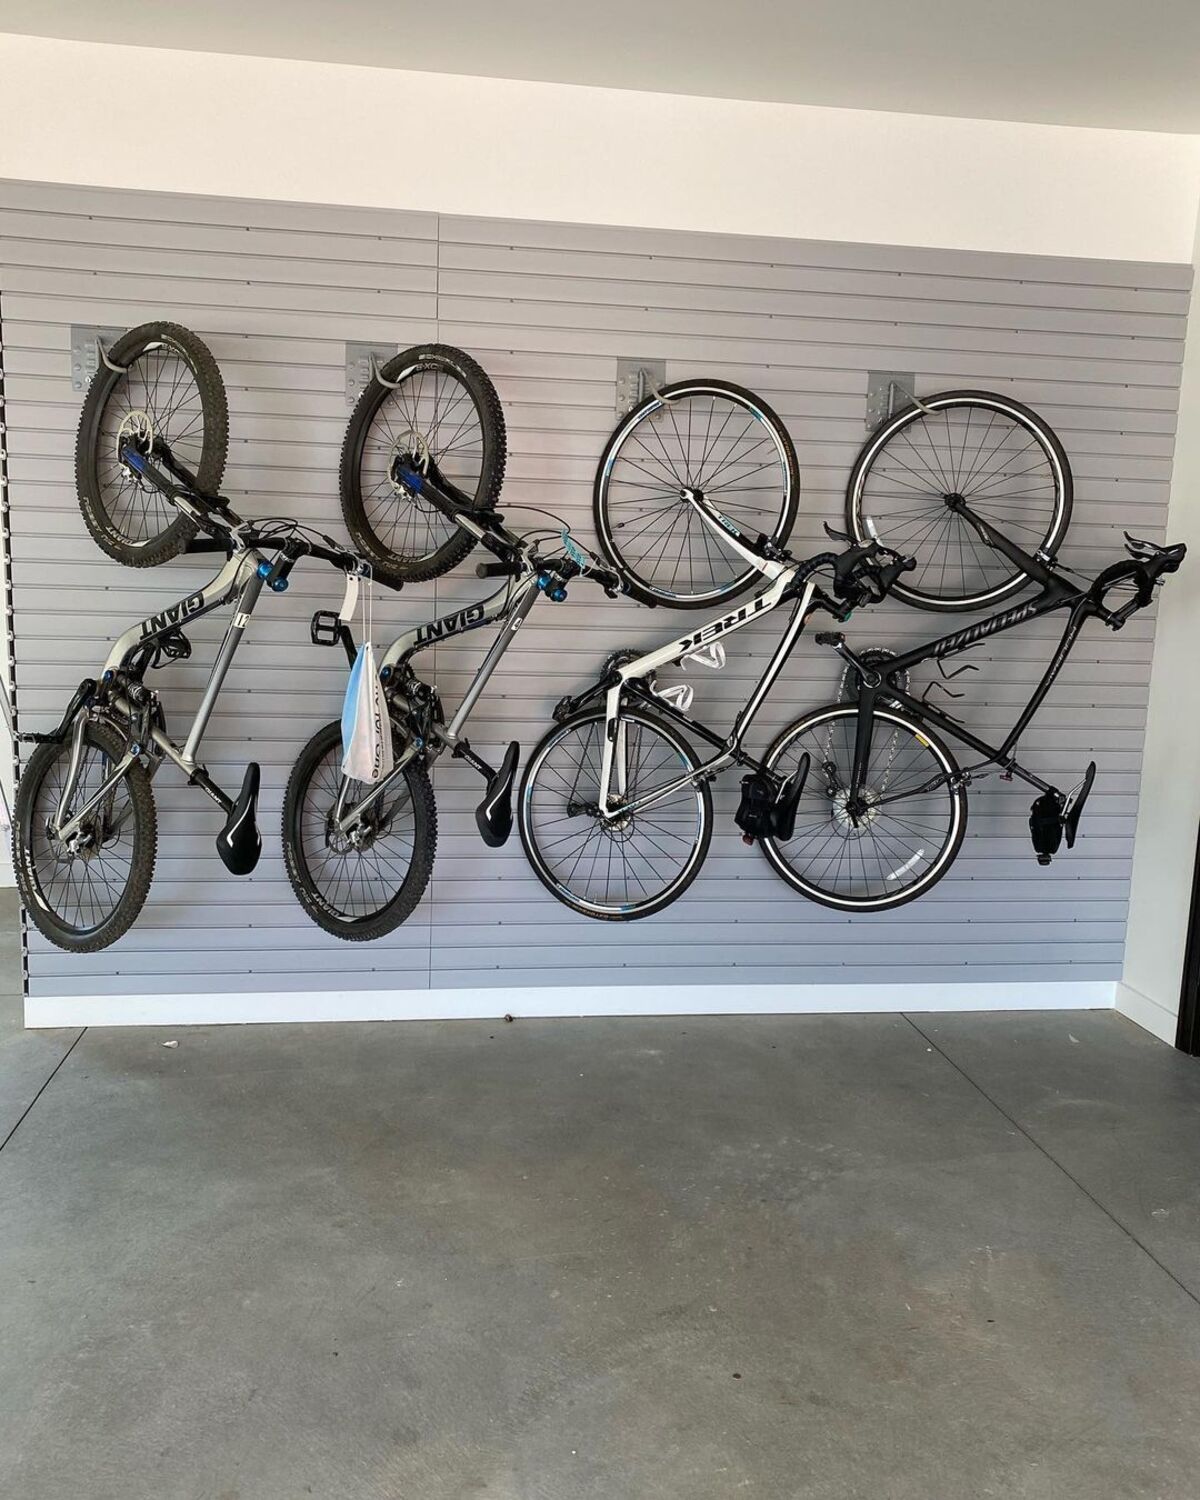 15 garage bike storage ideas 5